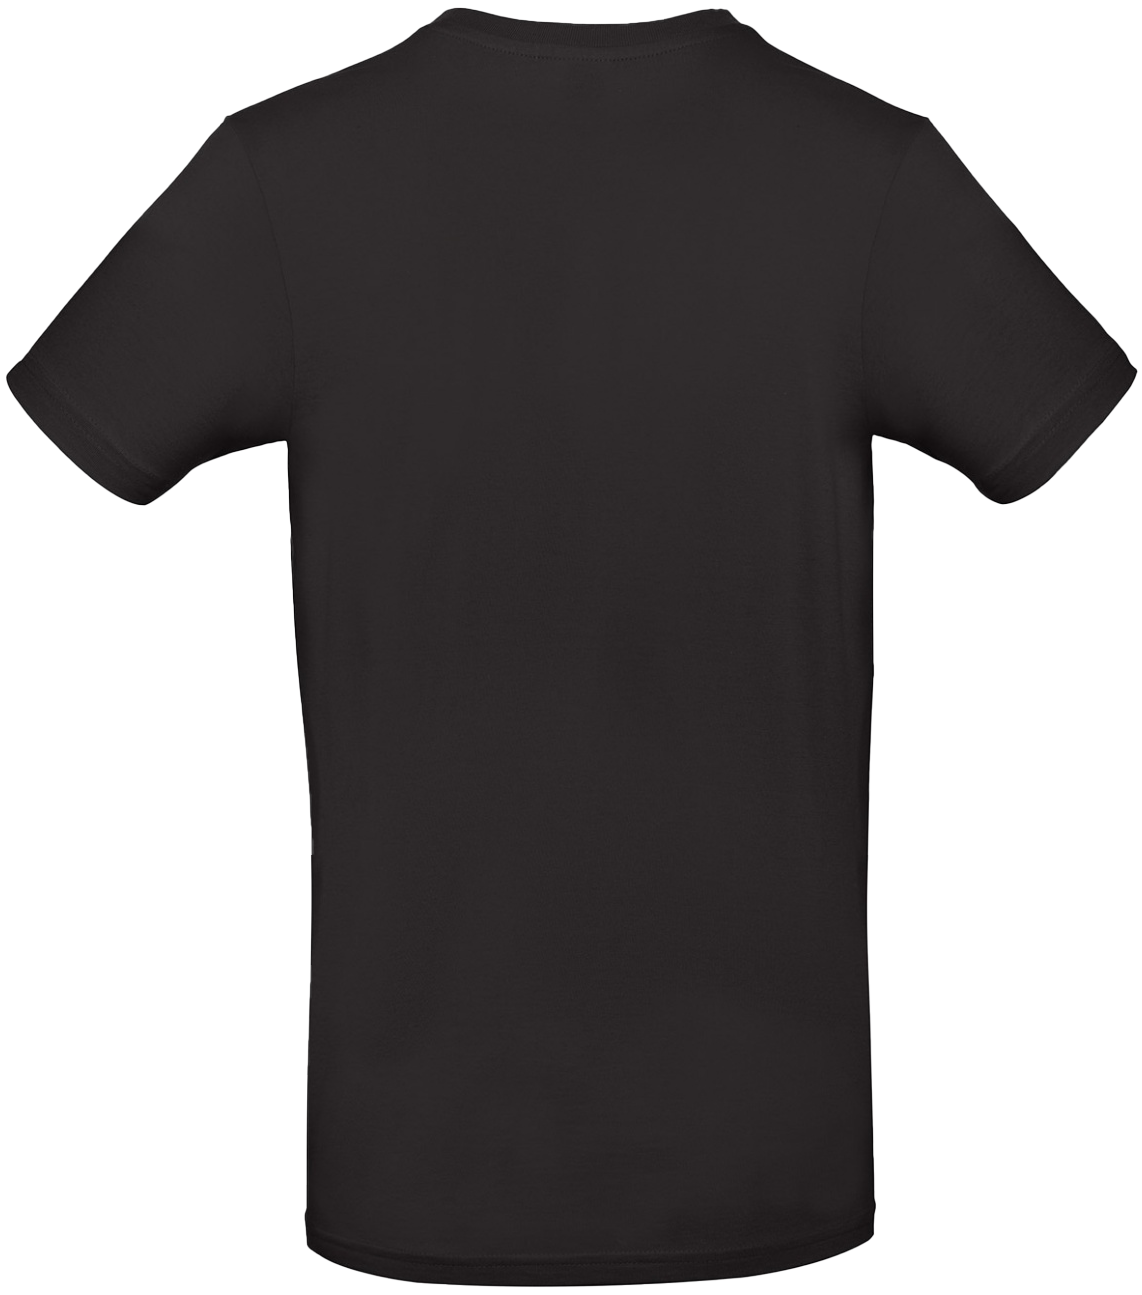 T-shirt E#190 Svart 56